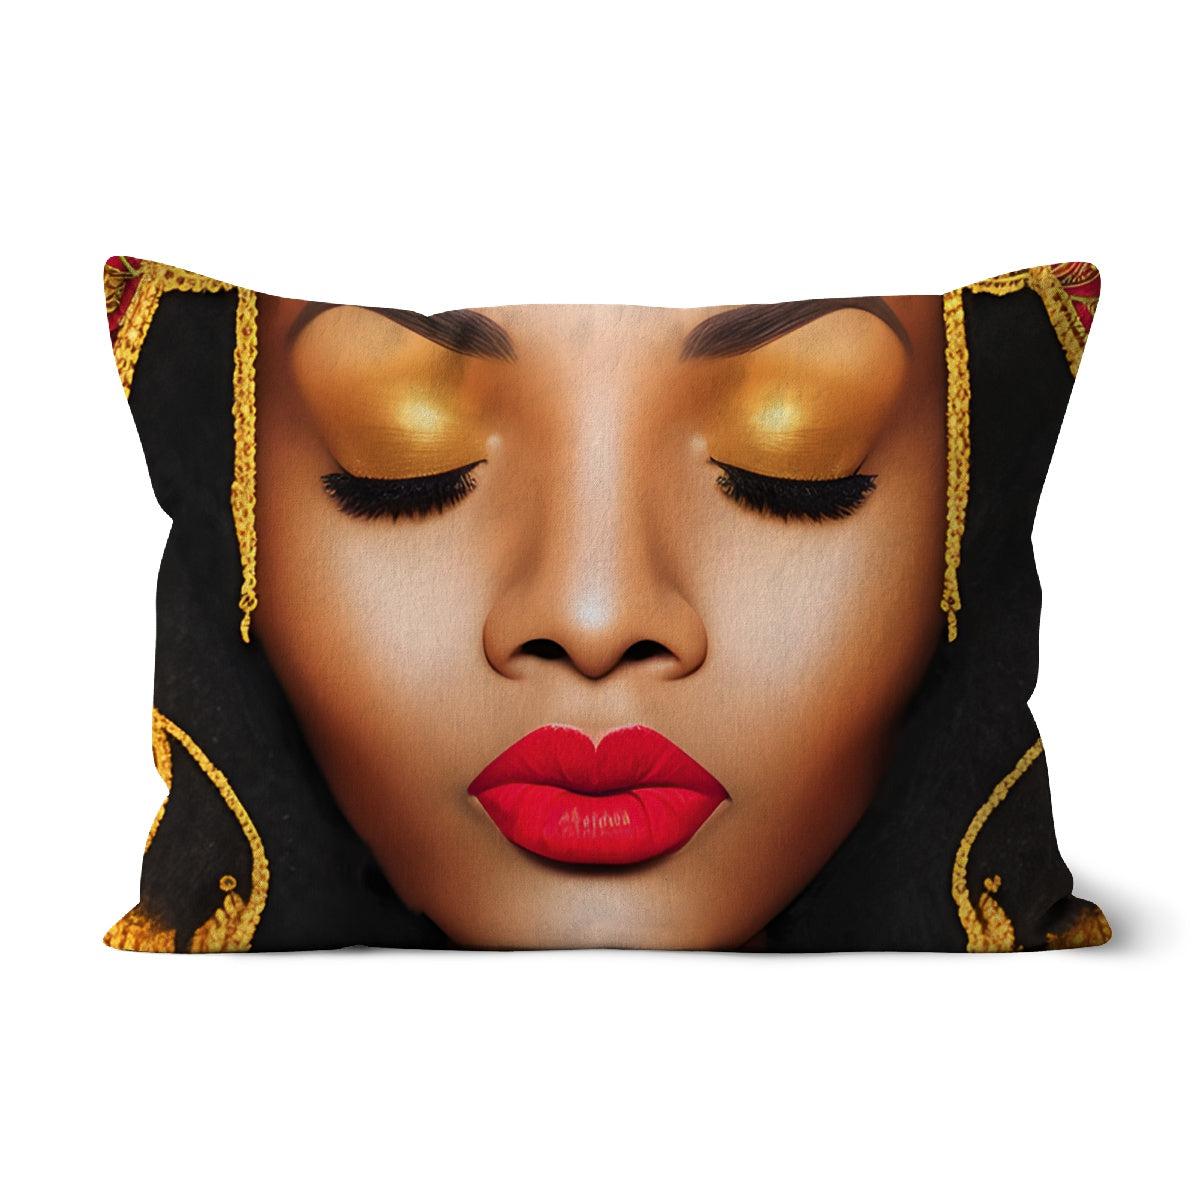 Goddess Golden Cushion